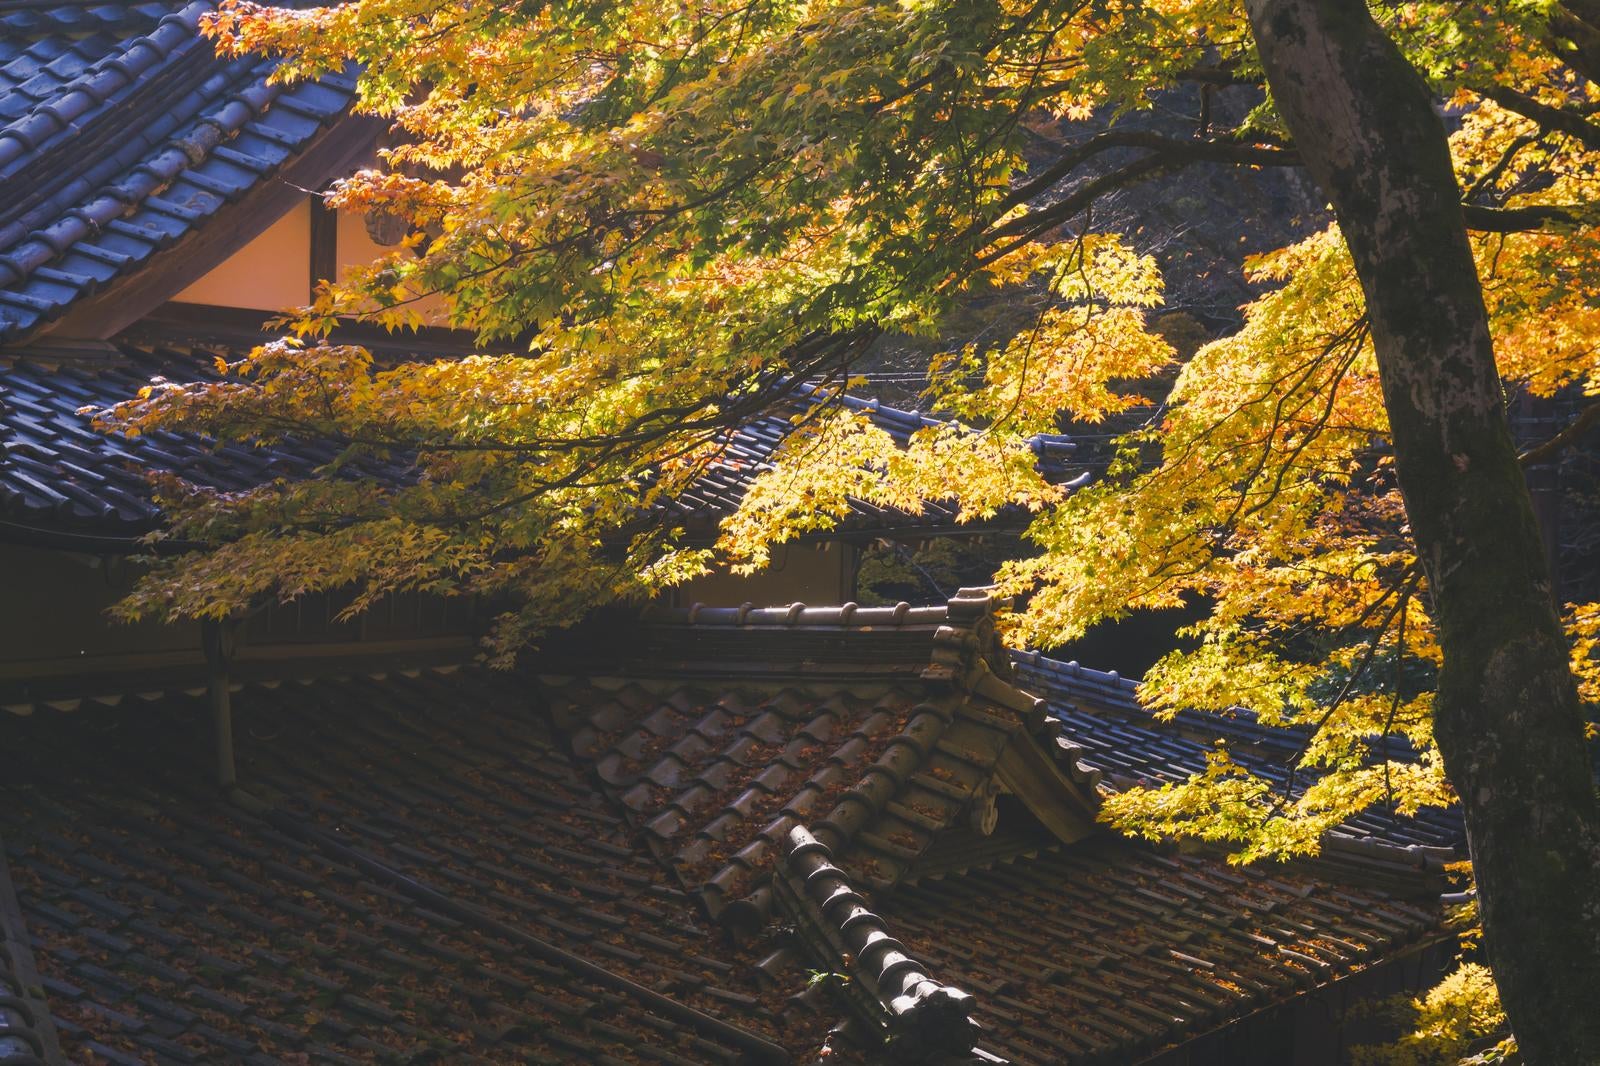 「瓦屋根に積もる落ち葉と朝日に黄金色に輝く枝葉」の写真